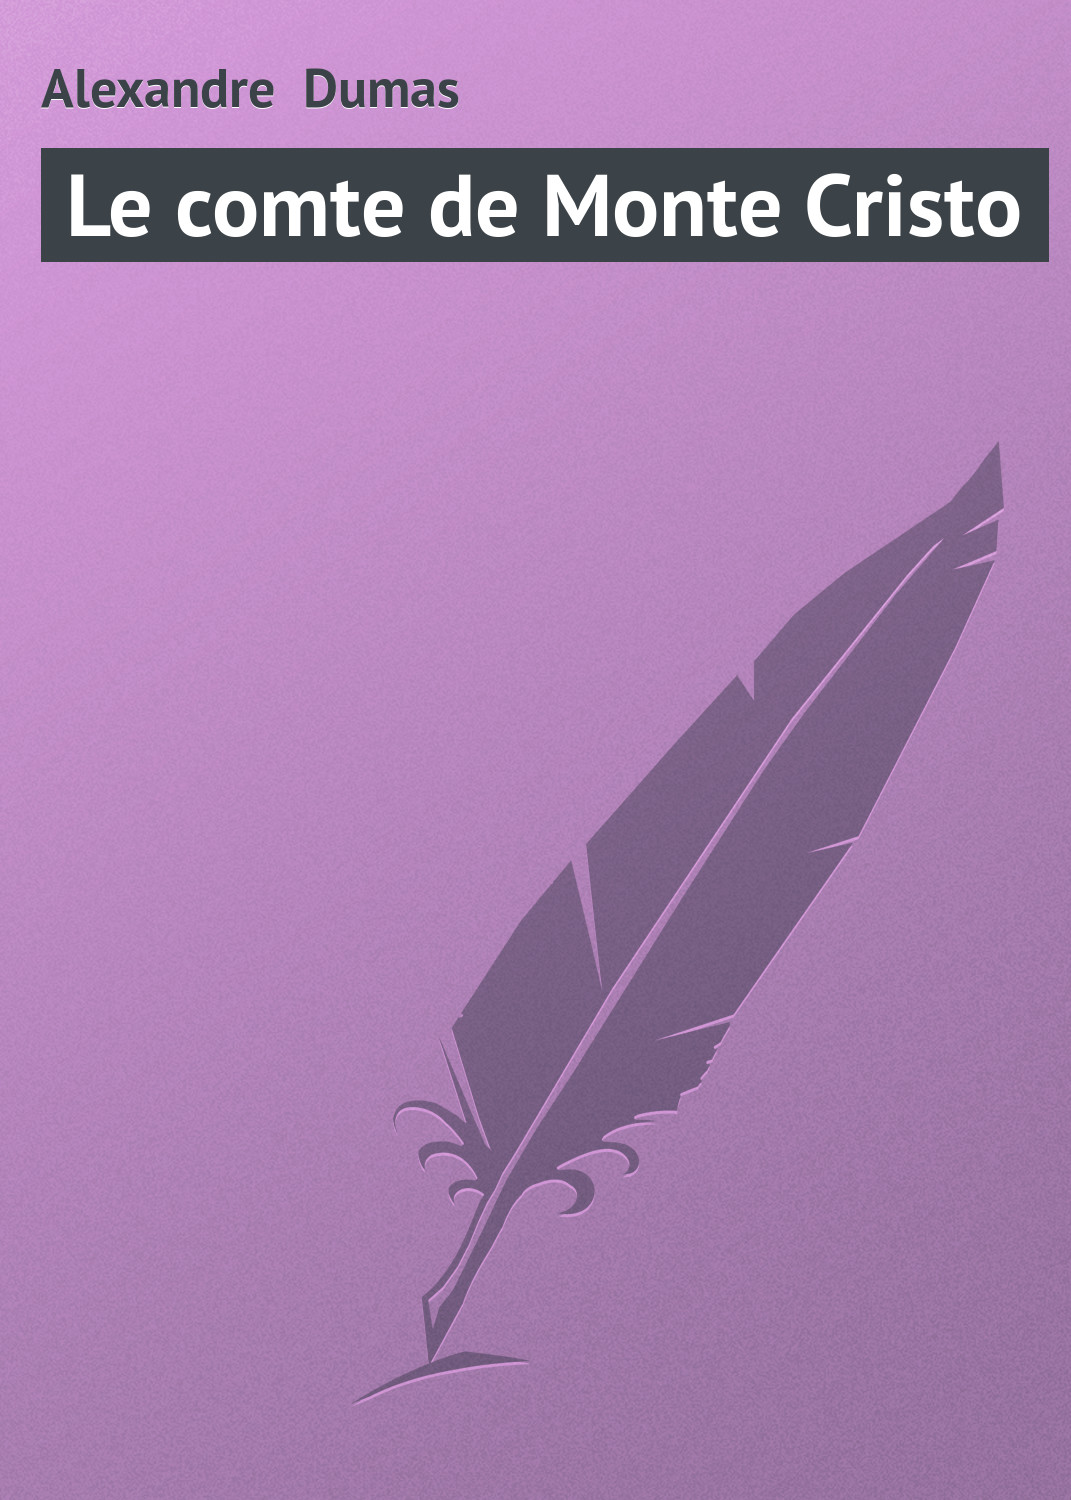 Книга Le comte de Monte Cristo из серии , созданная Alexandre Dumas, может относится к жанру Зарубежная старинная литература, Зарубежная классика. Стоимость электронной книги Le comte de Monte Cristo с идентификатором 21104286 составляет 5.99 руб.